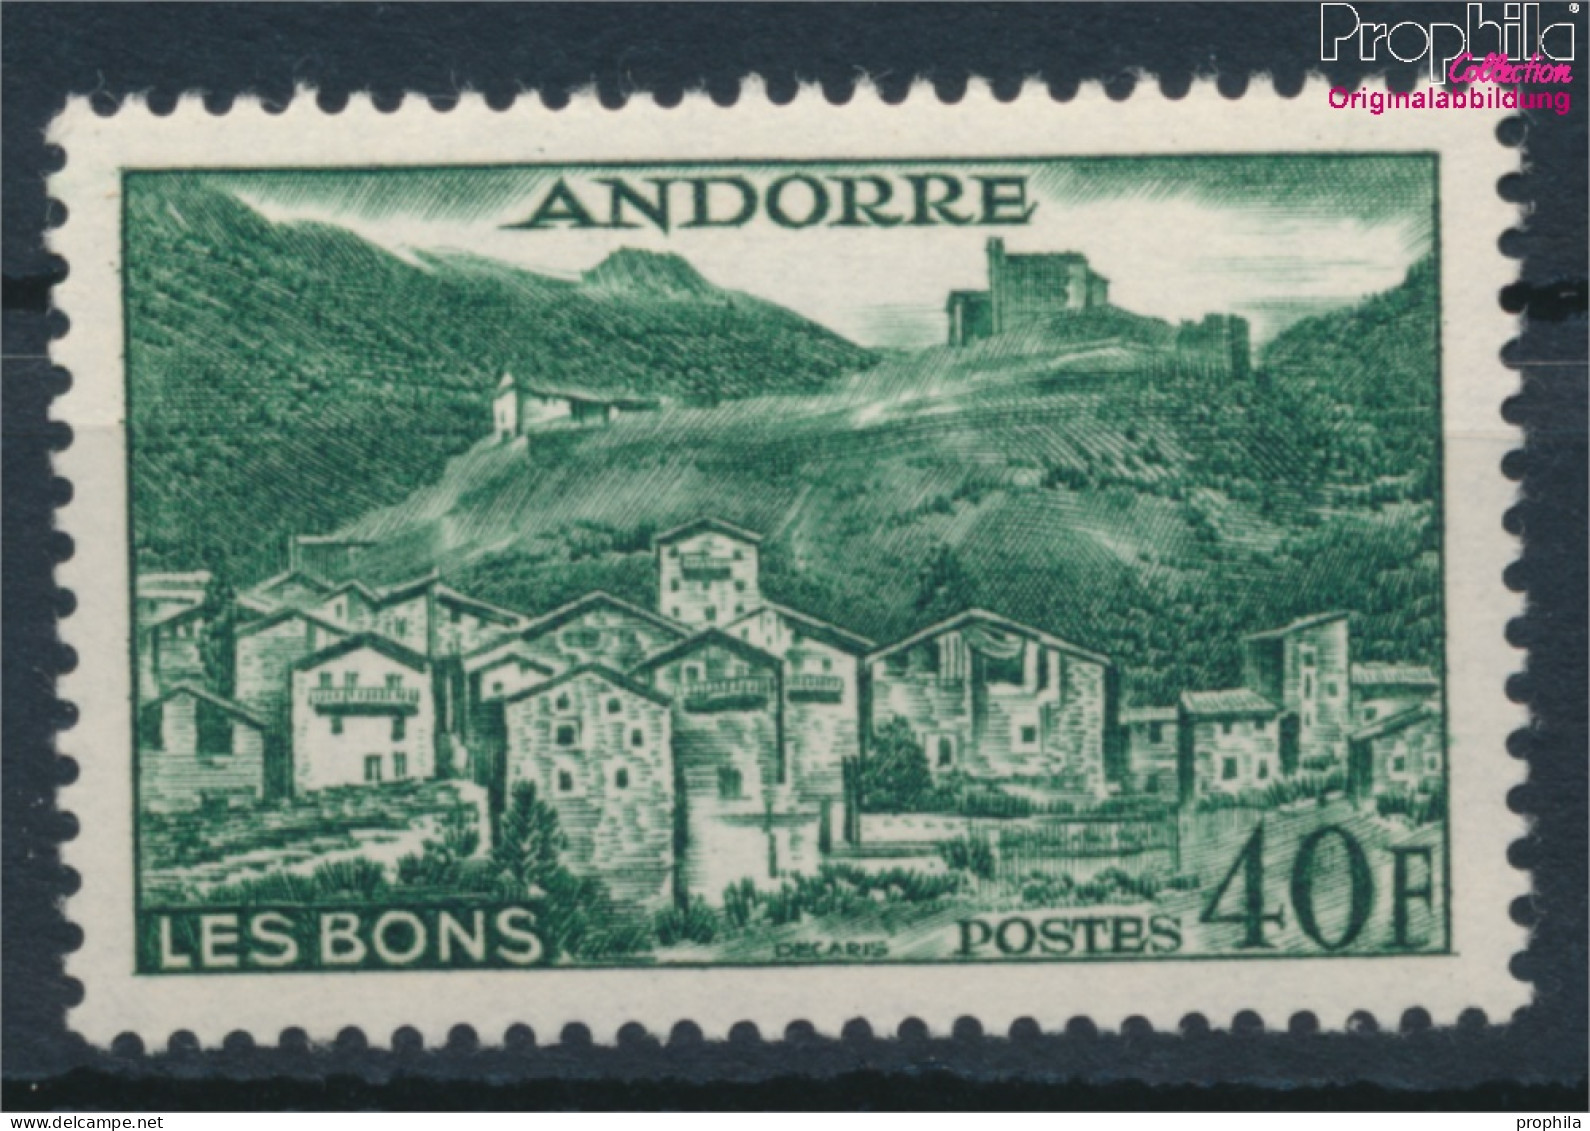 Andorra - Französische Post 155 Postfrisch 1955 Landschaften (10368396 - Ungebraucht